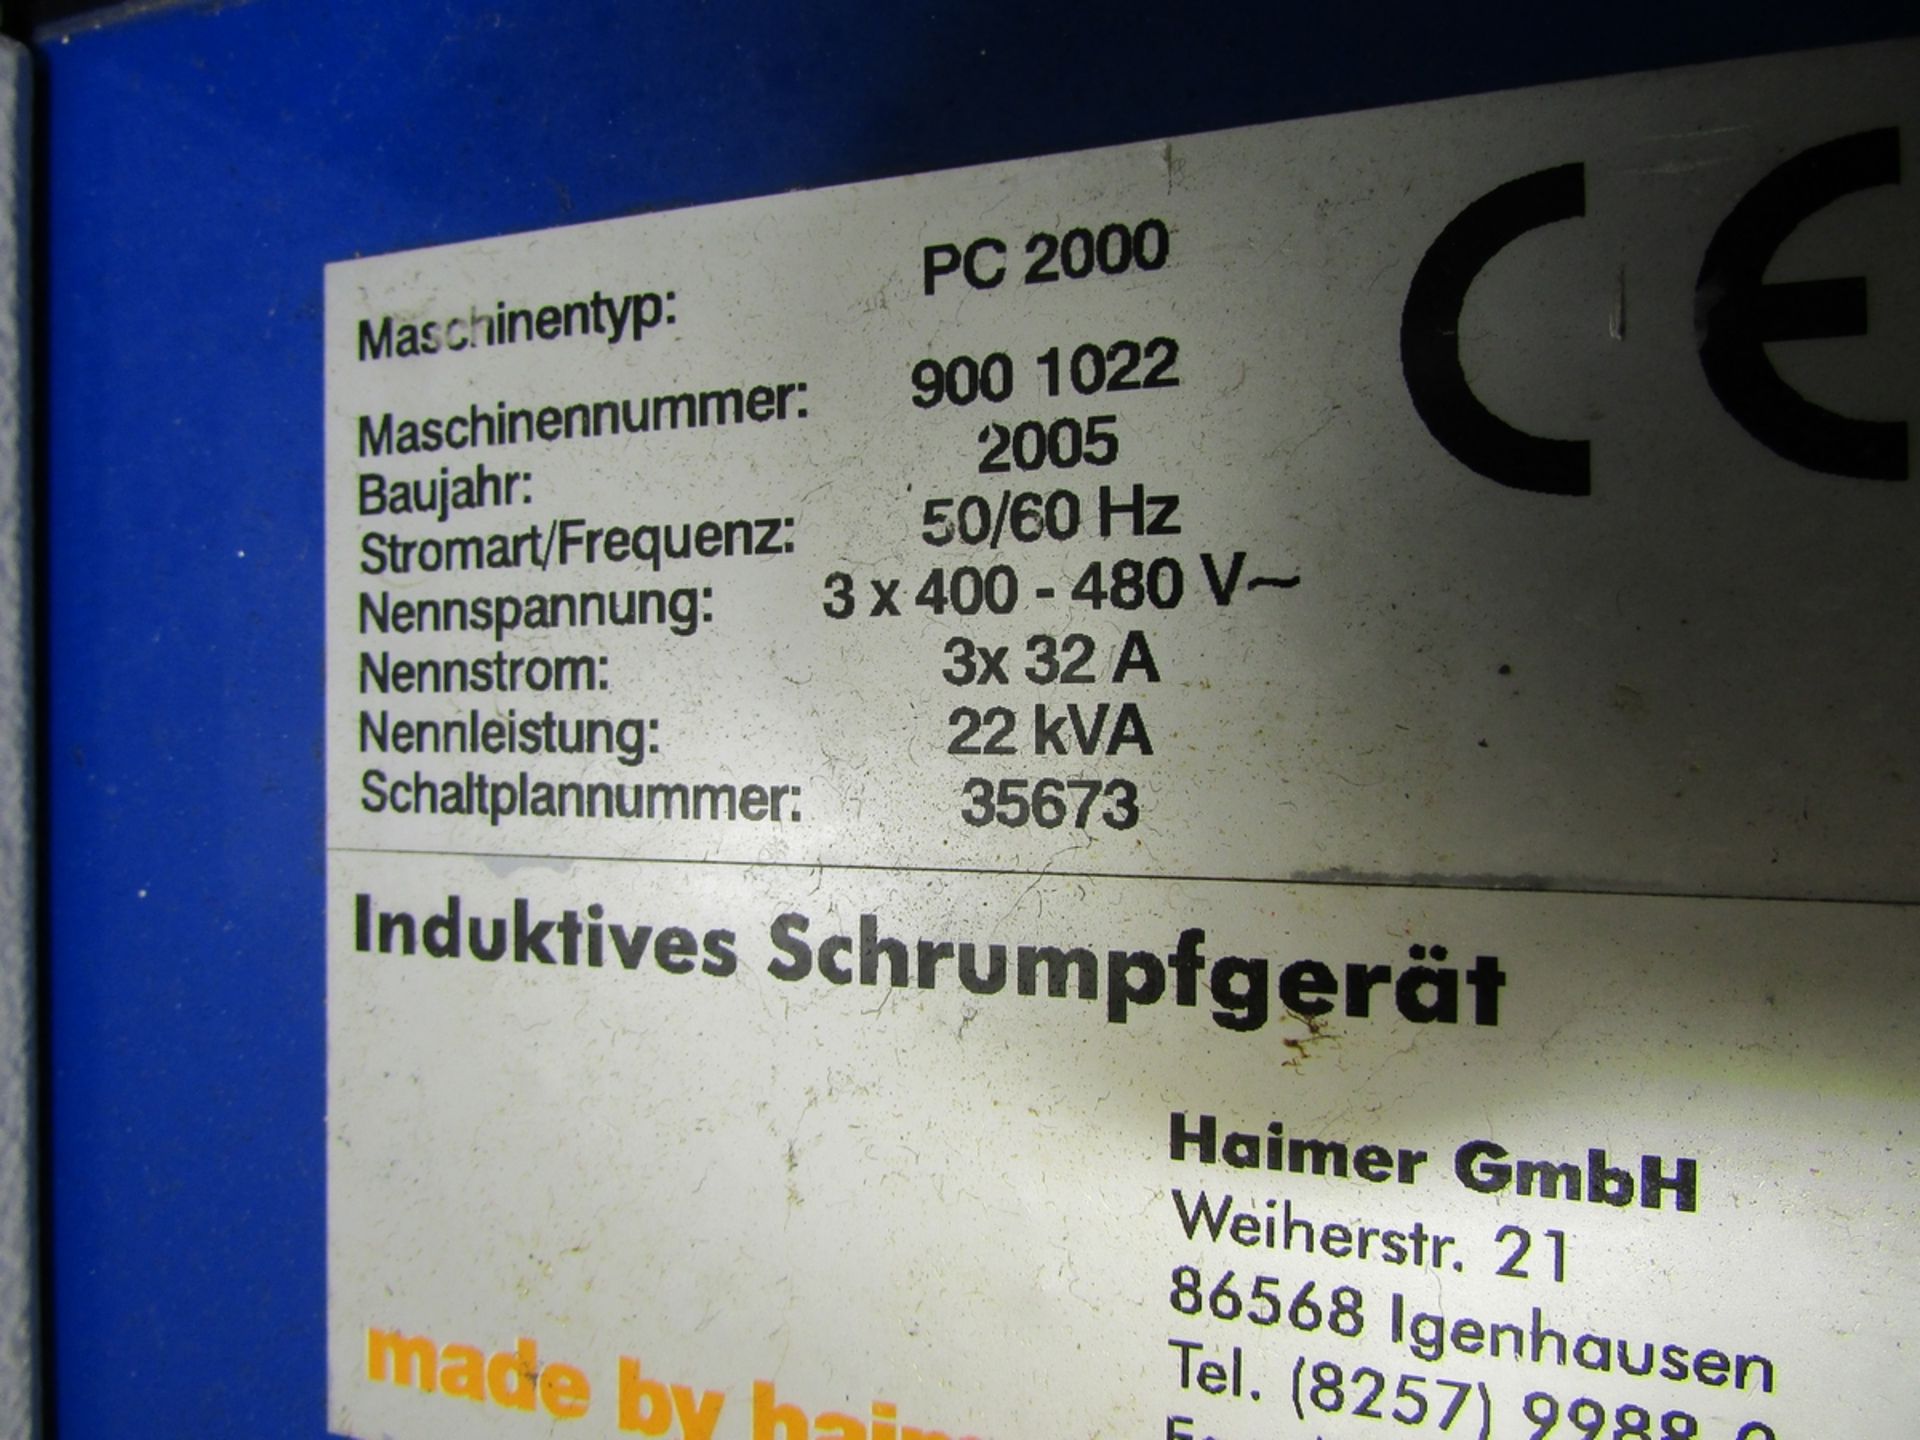 2005 HAIMER 50 TAPER SHRINK FIT TOOL SETTER, MODEL POWER CLAMP 2000, 400-480V 50/60HZ 3PH, W/ - Image 11 of 11